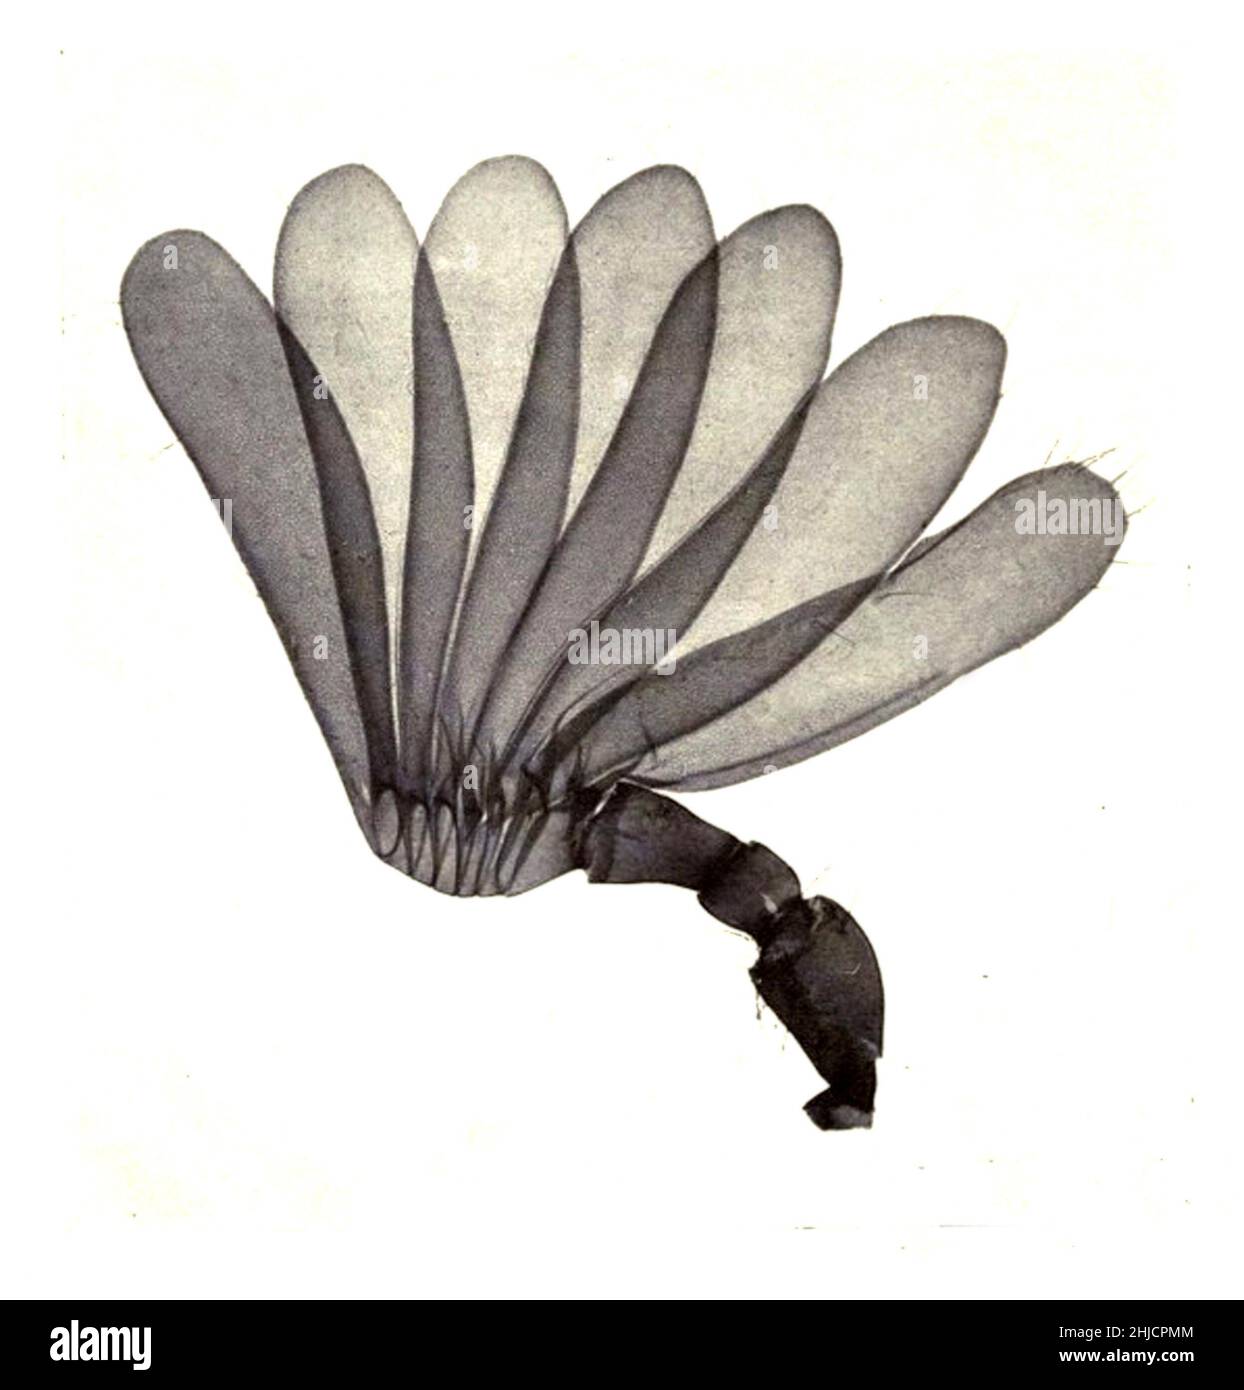 Antenne des Cockchafers (Melolontha), umgangssprachlich May Bug oder Doodlebug genannt. Dies ist ein europäischer Käfer der Gattung Melolontha, in der Familie Scarabaeidae. Vergrößerung: 15-fach. Fotomikrograph von Arthur E Smith in den frühen 1900er Jahren, mit einem kombinierten Mikroskop und Kamera. 1904 stellte die Royal Society in London eine Reihe von Smiths Fotomikrographen der Öffentlichkeit aus. Sie wurden später 1909 in einem Buch mit dem Titel "Nature Through Microscope & Camera" veröffentlicht. Sie waren die ersten Beispiele für die Photomikroskopie, die viele je gesehen hatten. Stockfoto